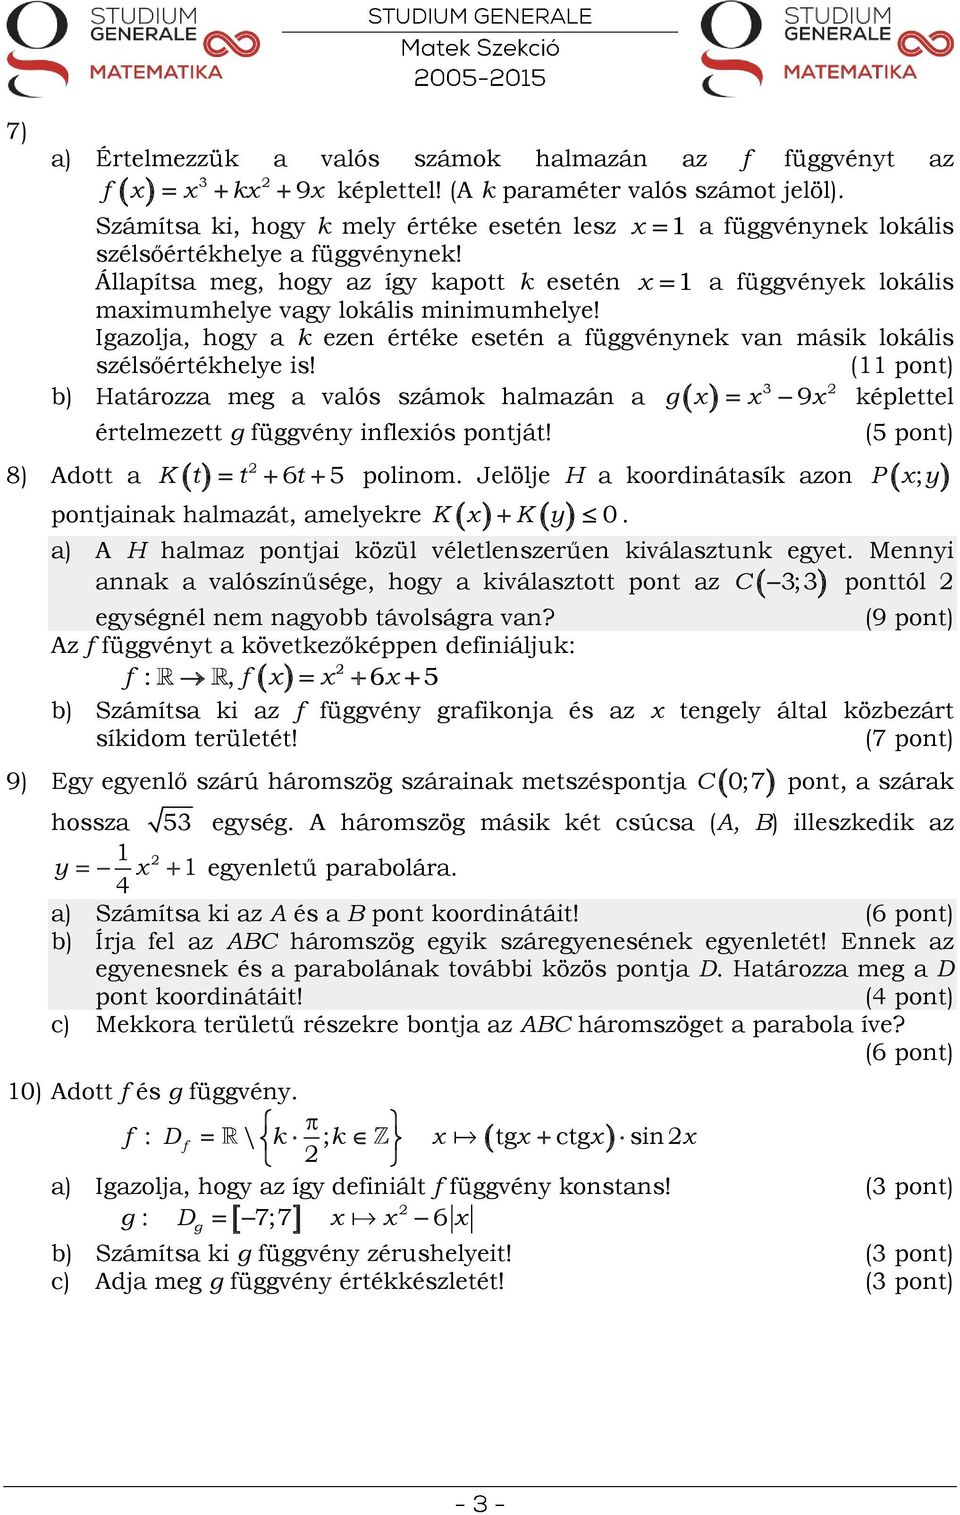 (11 pont) b) Határozza meg a valós számok halmazán a képlettel értelmezett g üggvény inleiós pontját!